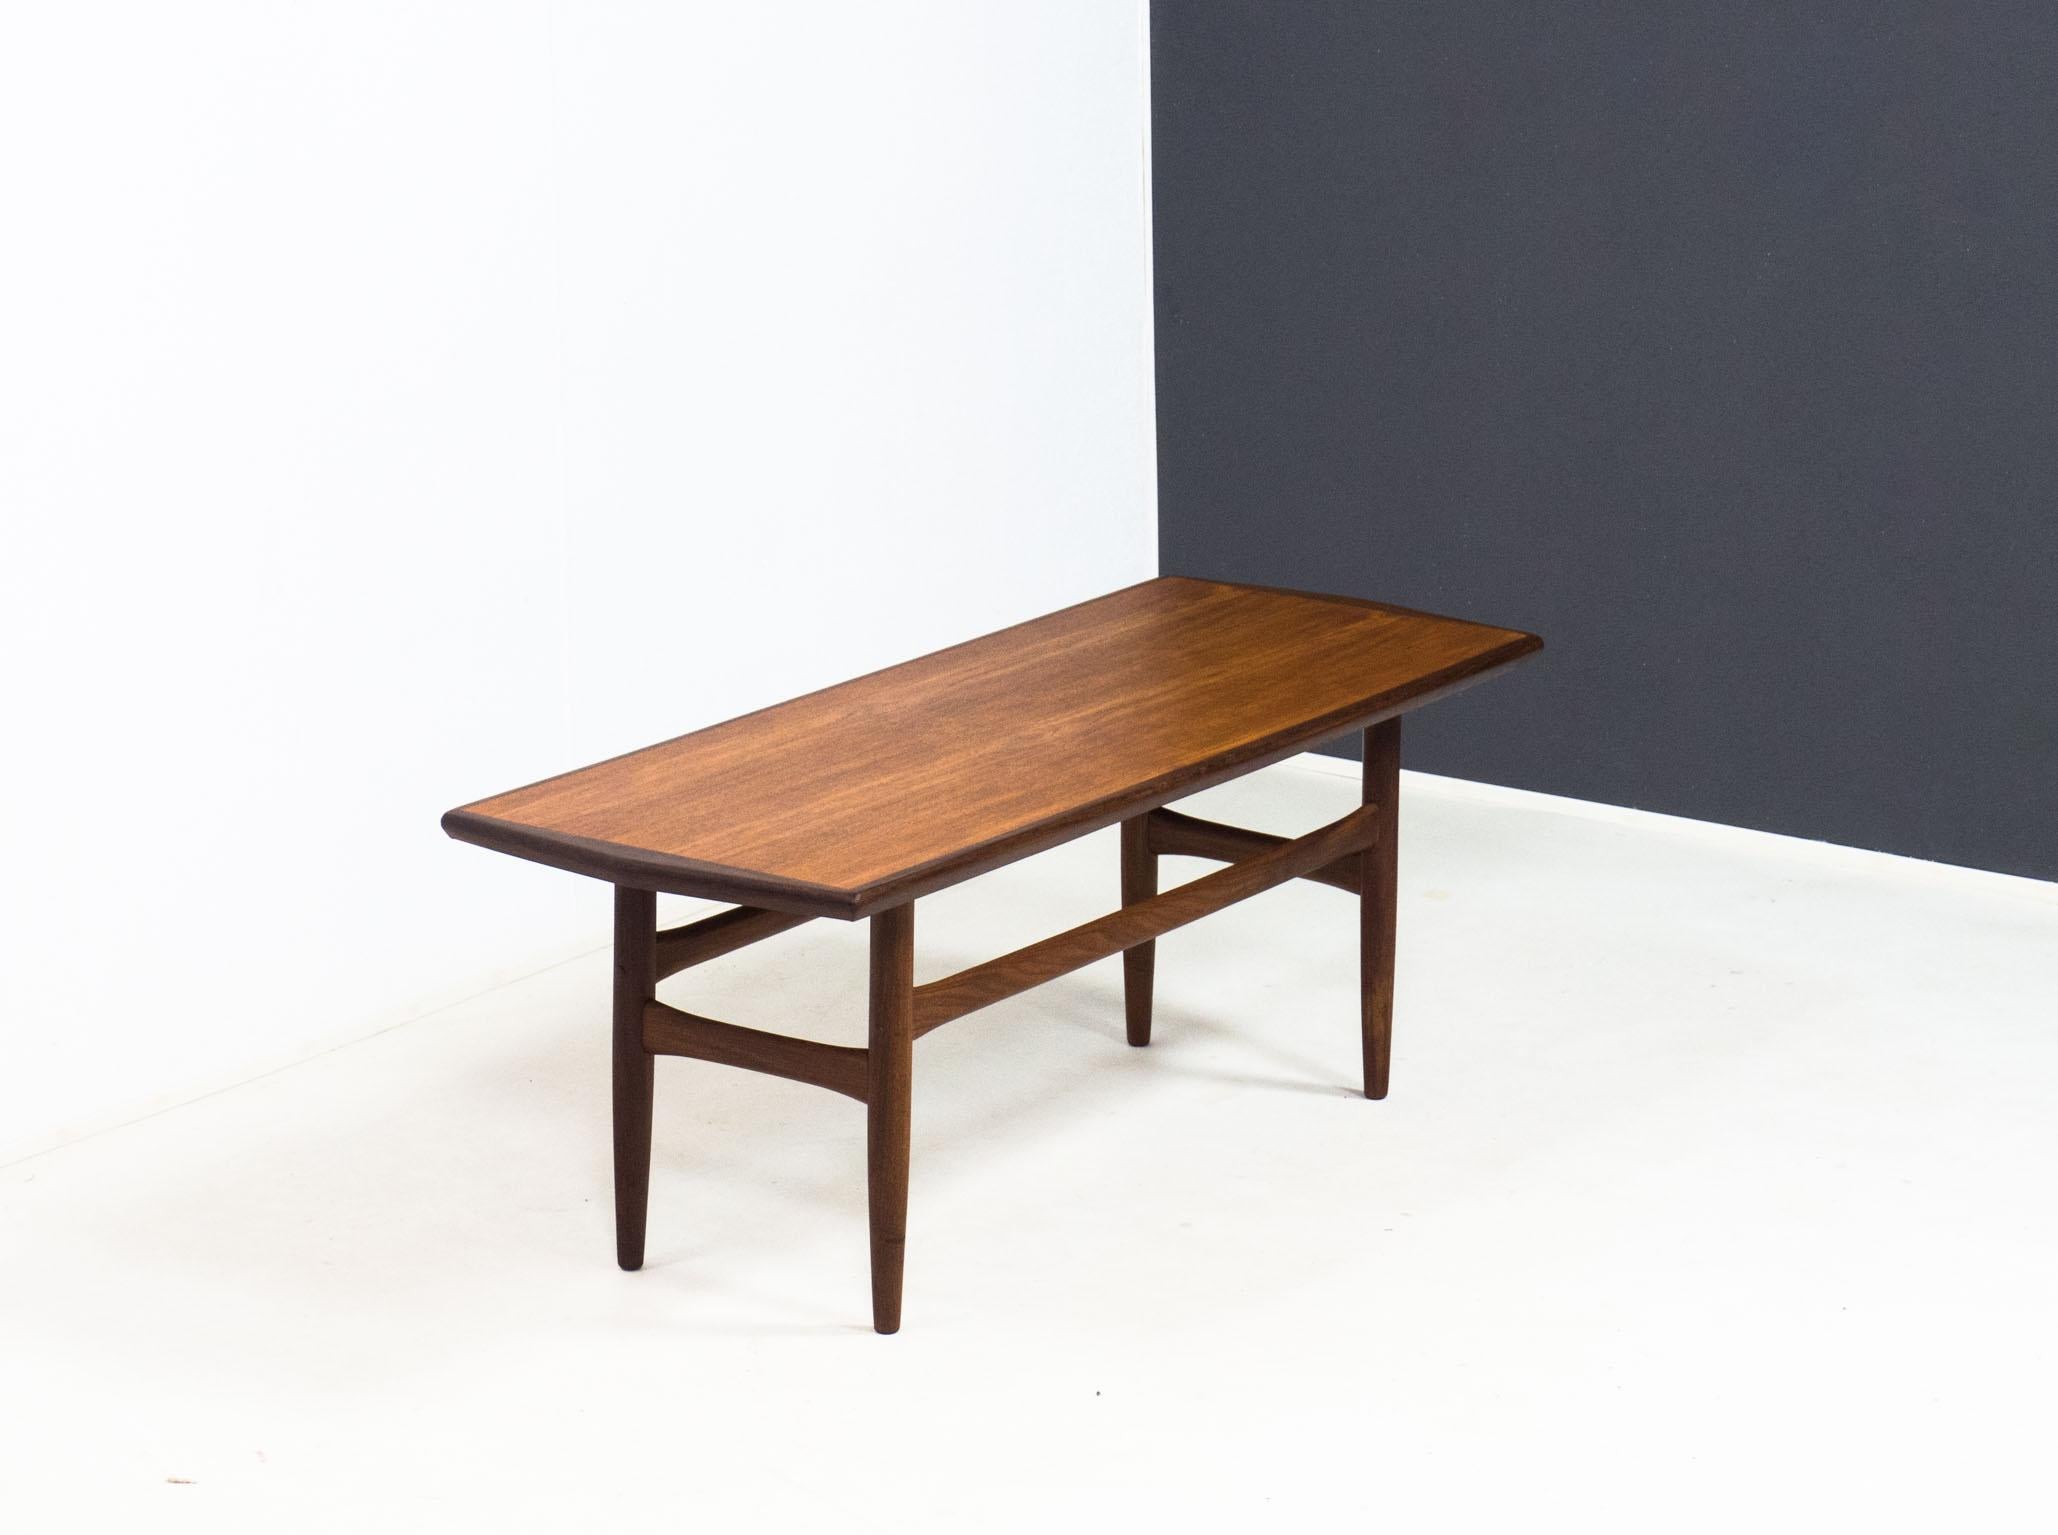 Table basse vintage des années 1960, probablement produite aux Pays-Bas.

Cette table a un plateau plaqué de teck, des bords et un cadre en afrormosia massif ou 